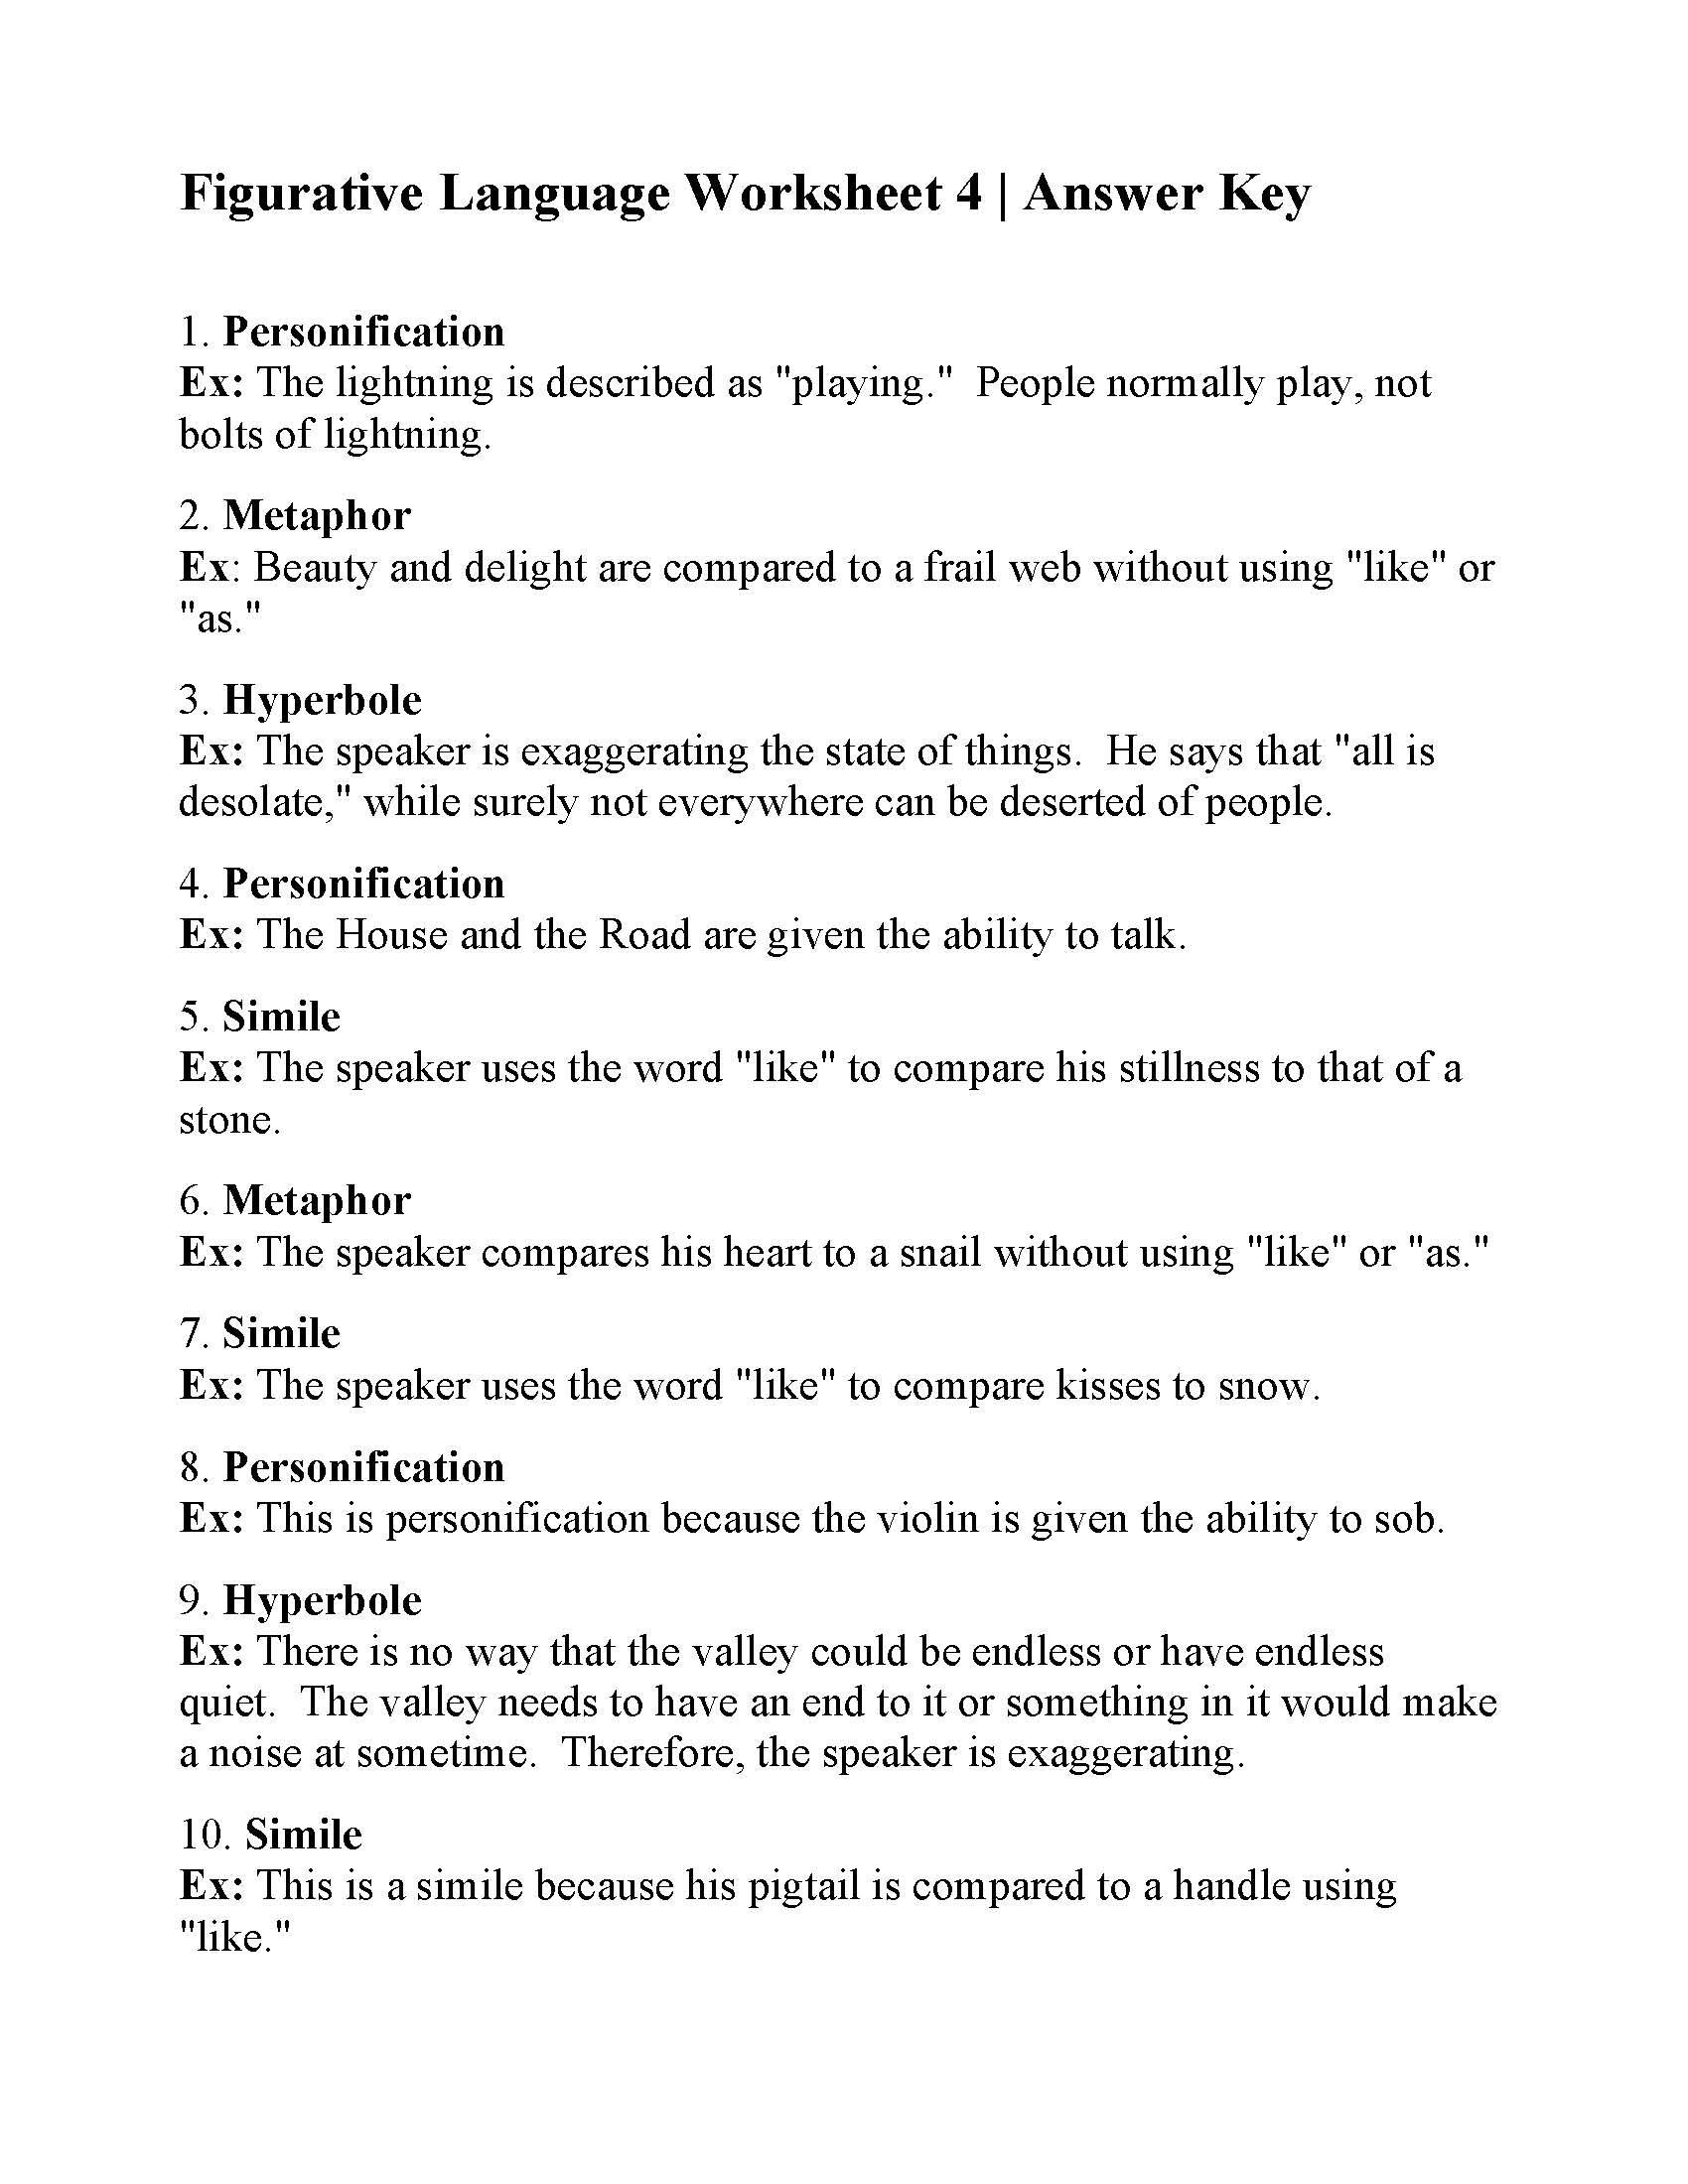 Figurative Language Worksheet 21  Reading Activity With Figurative Language Worksheet 2 Answers